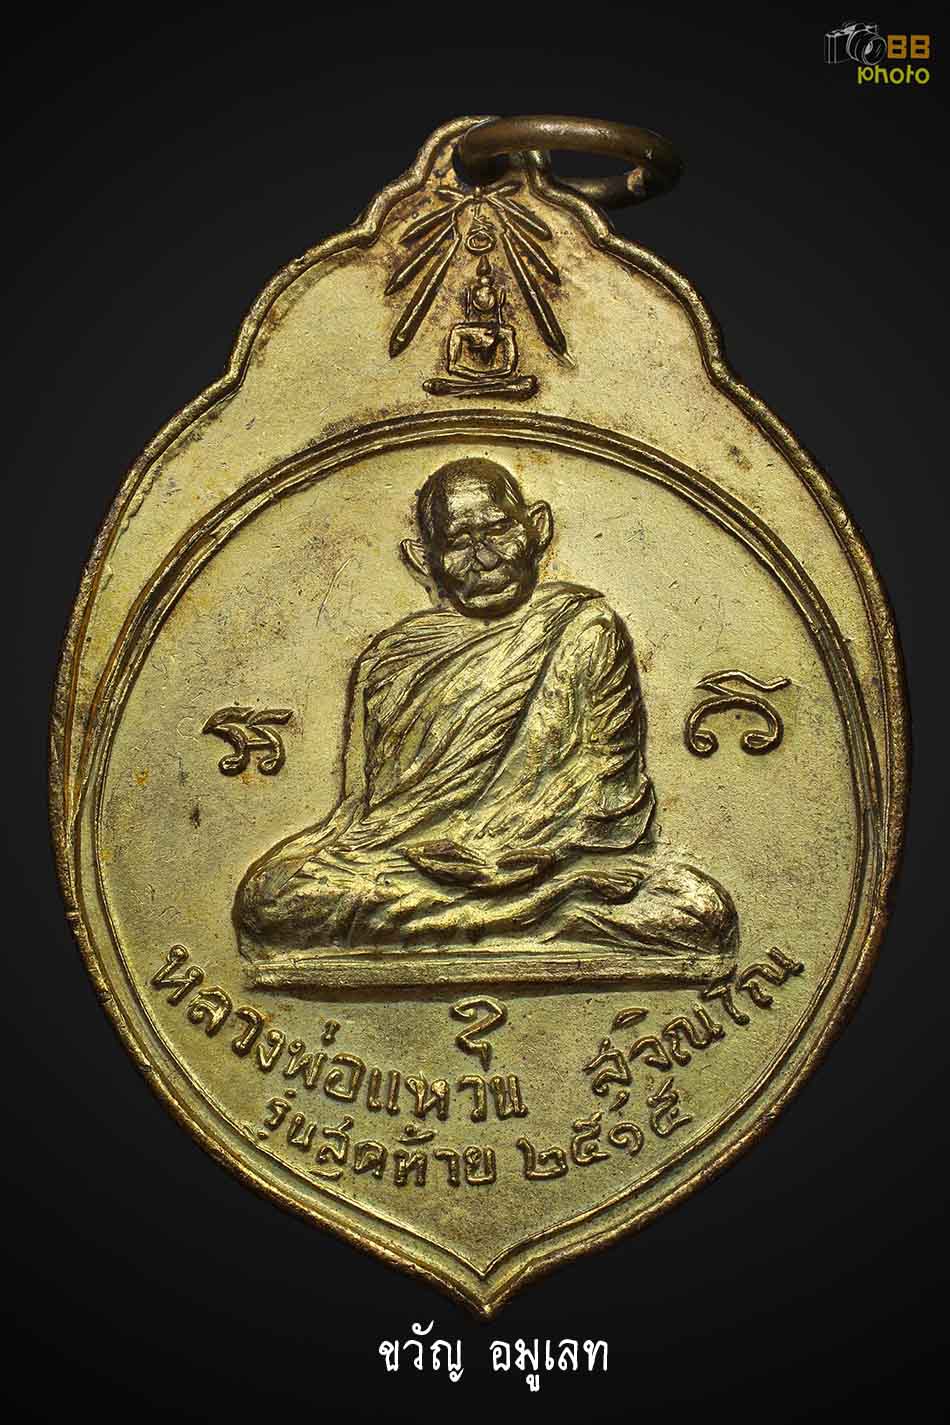 เหรียญ ทอ.3 หลวงปู่แหวน ปี 2515